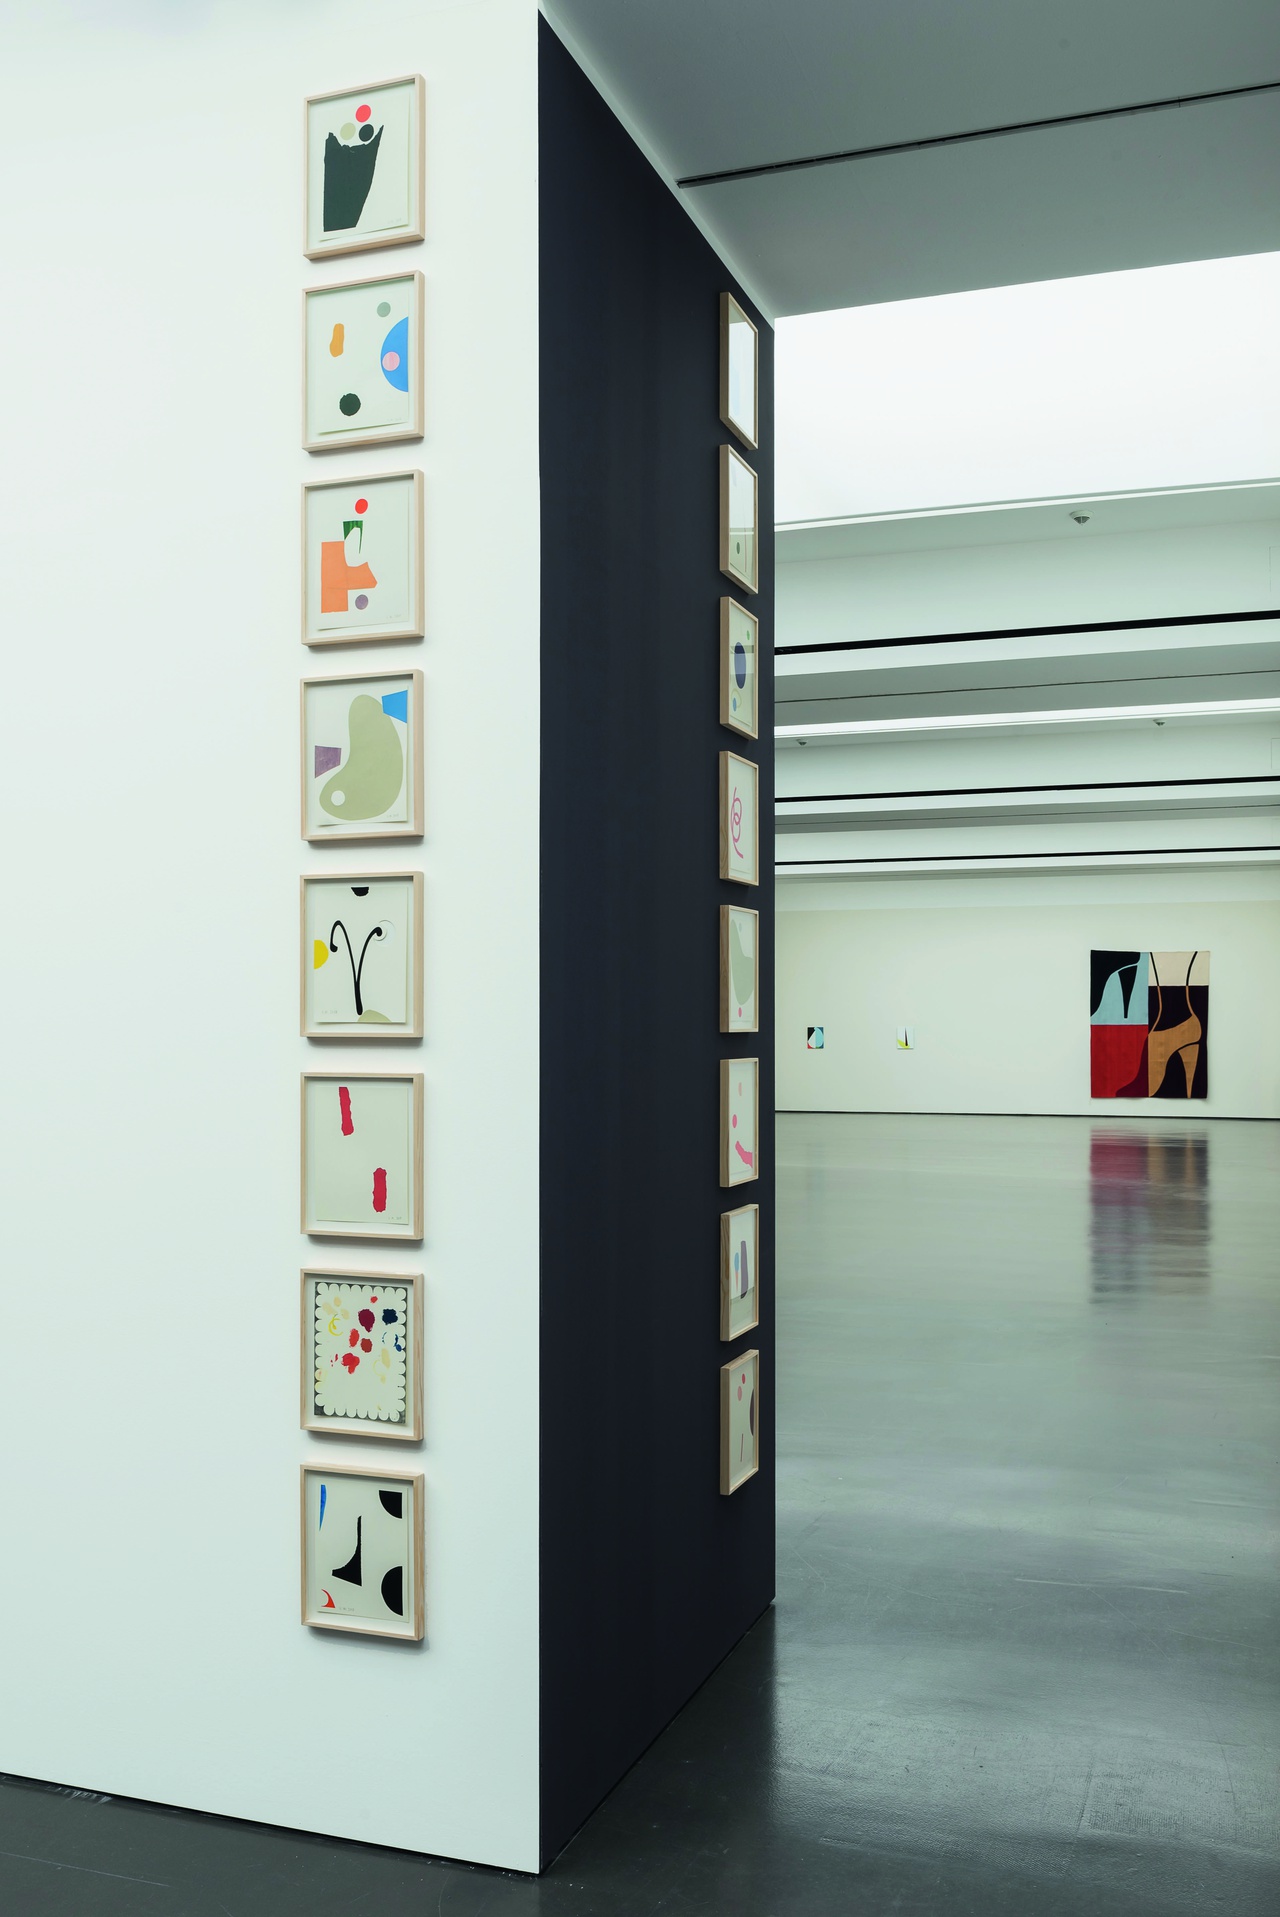 „Ulrike Müller: Container“, Kunstverein für die Rheinlande und Westfalen, Düsseldorf, 2018/2019, Ausstellungsansicht